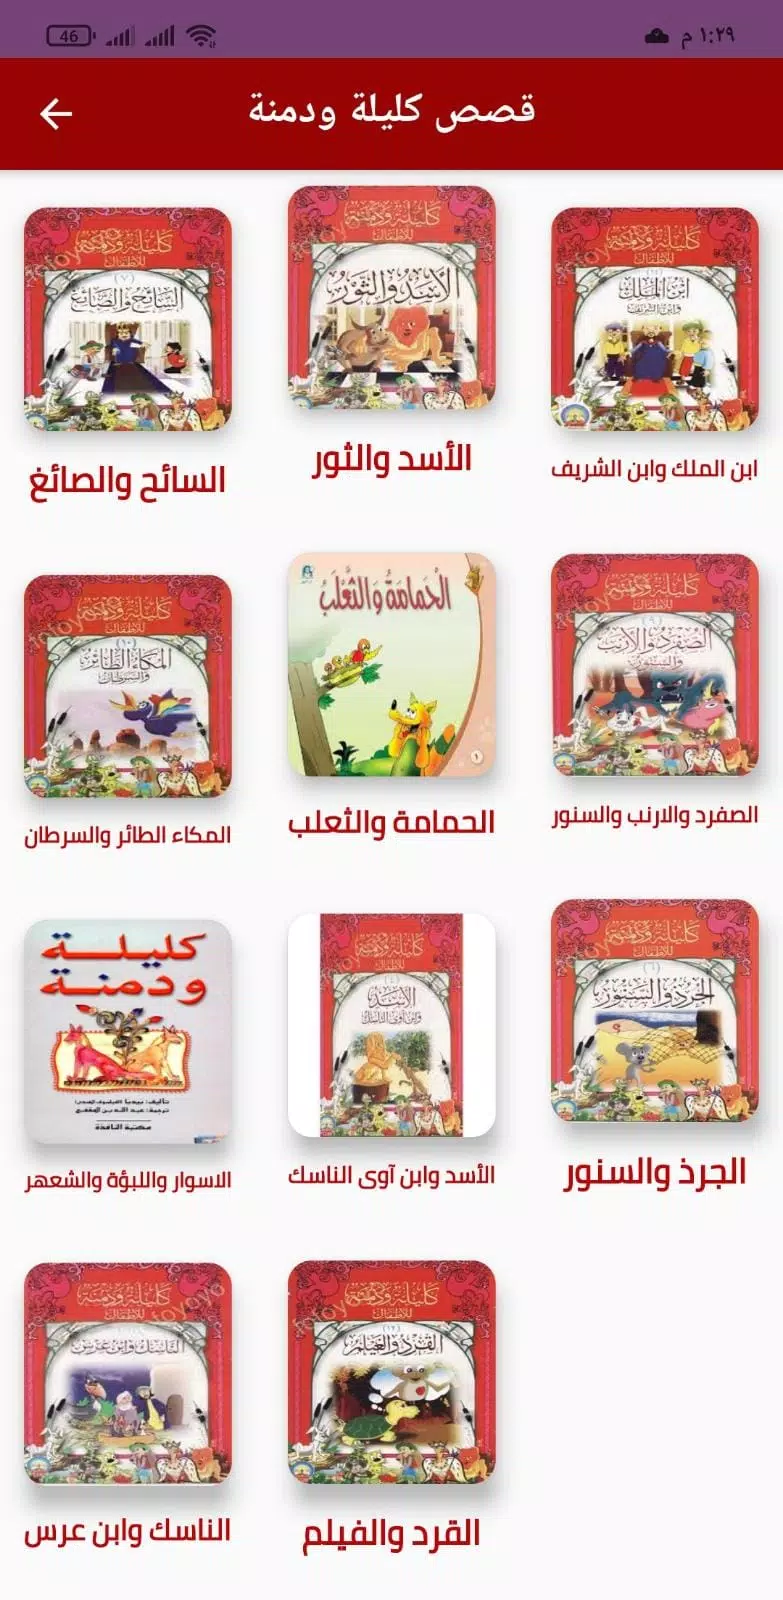 قصص كليلة ودمنة للأطفال APK for Android Download